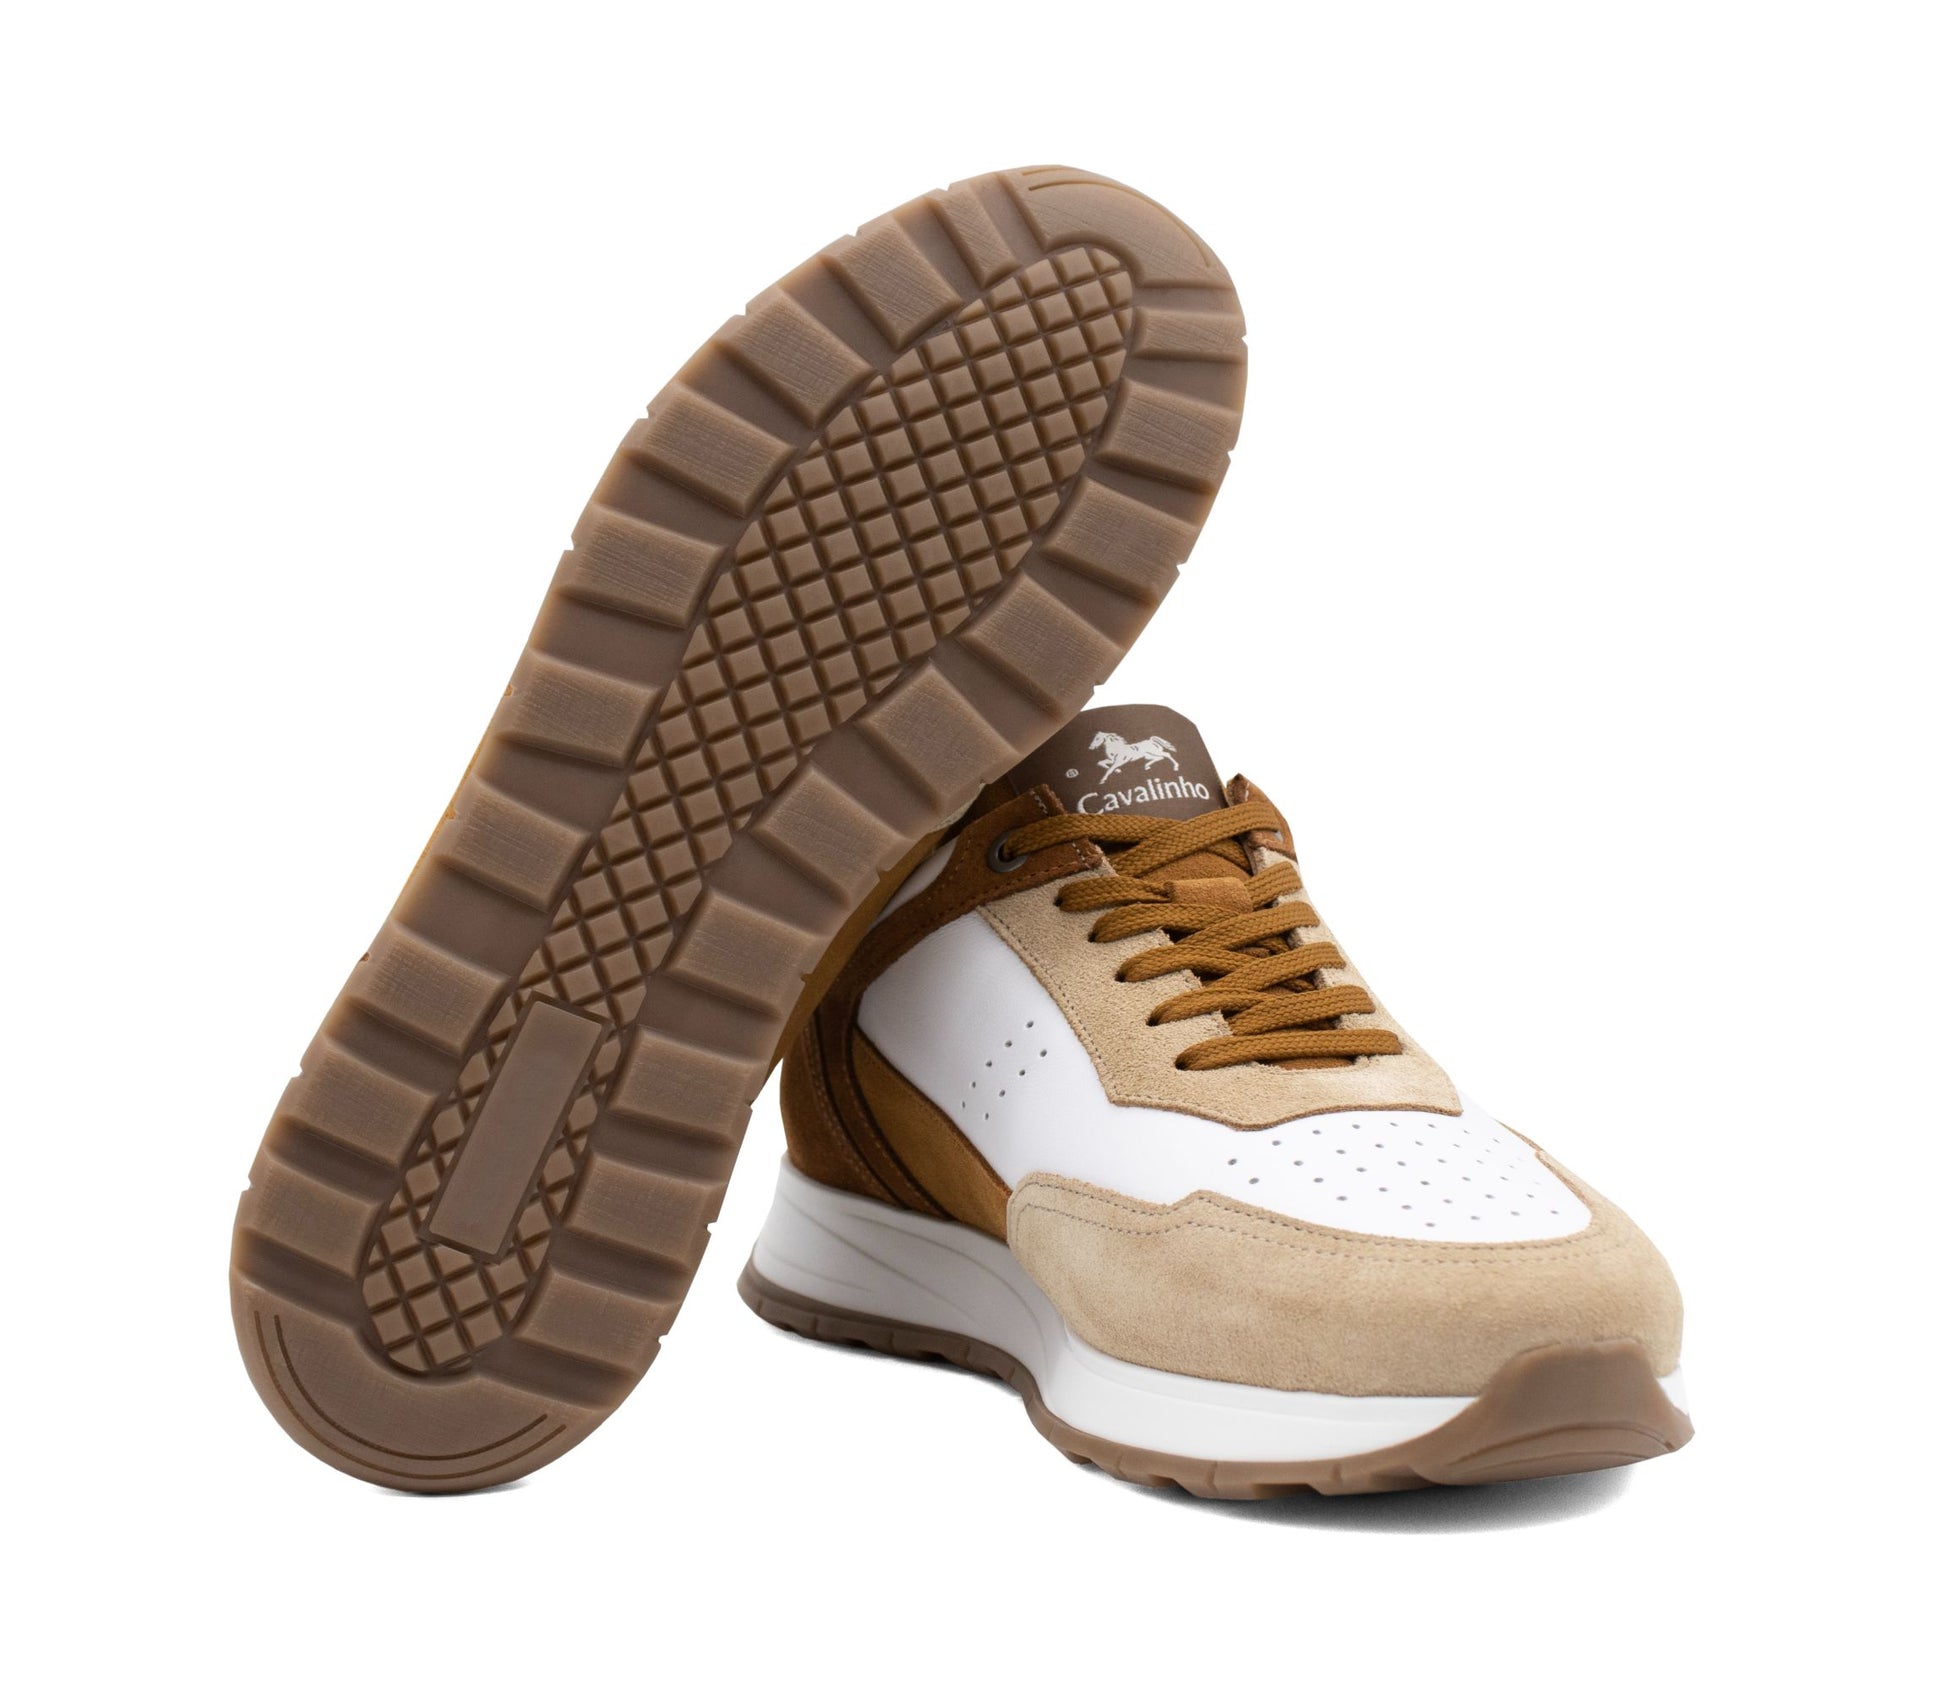 Cavalinho El Estribo Casual Sneakers - Beige - 48130108.34_5